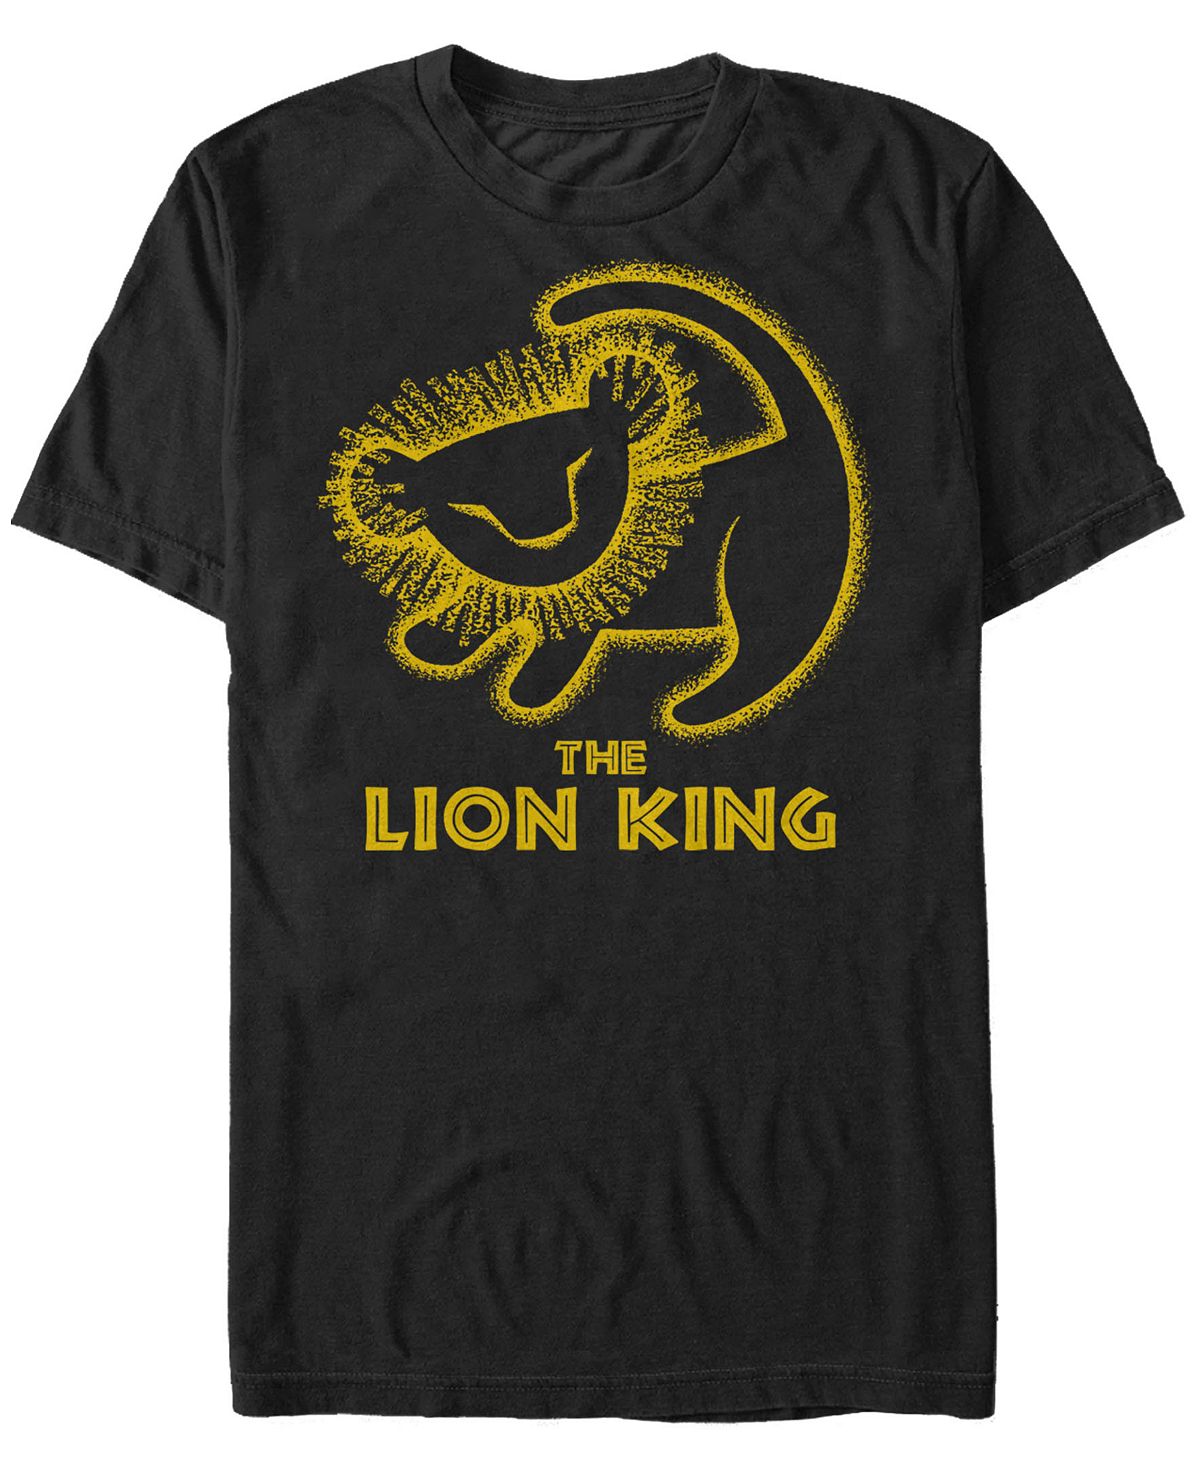 Мужская футболка с коротким рукавом disney king lion simba cave painting Fifth Sun, черный